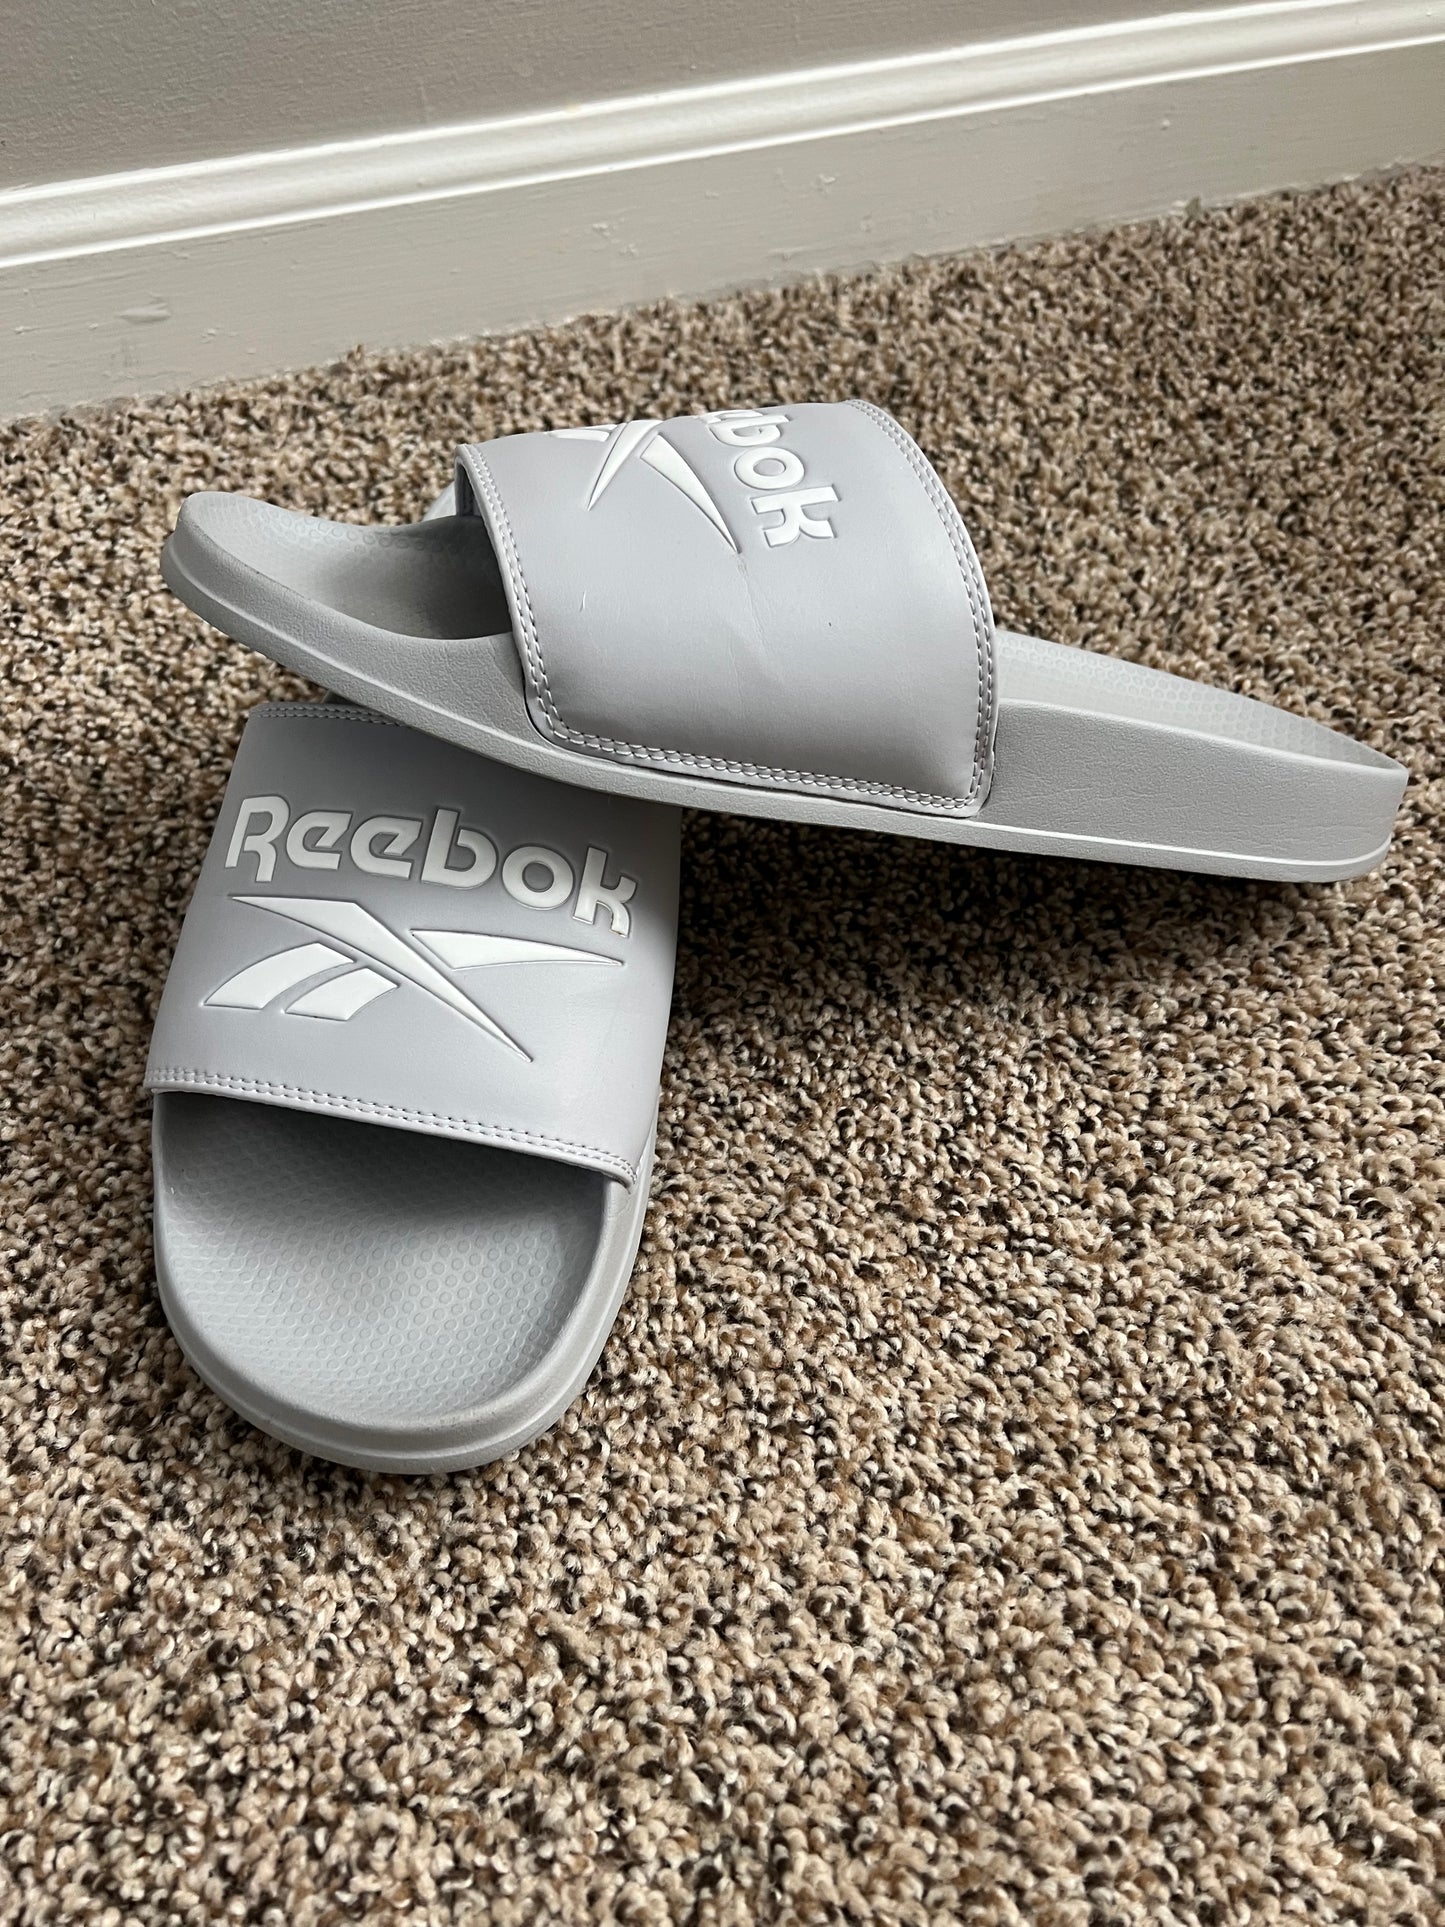 Men’s size 11 - Reebok slide shoes - EUC - worn a few times